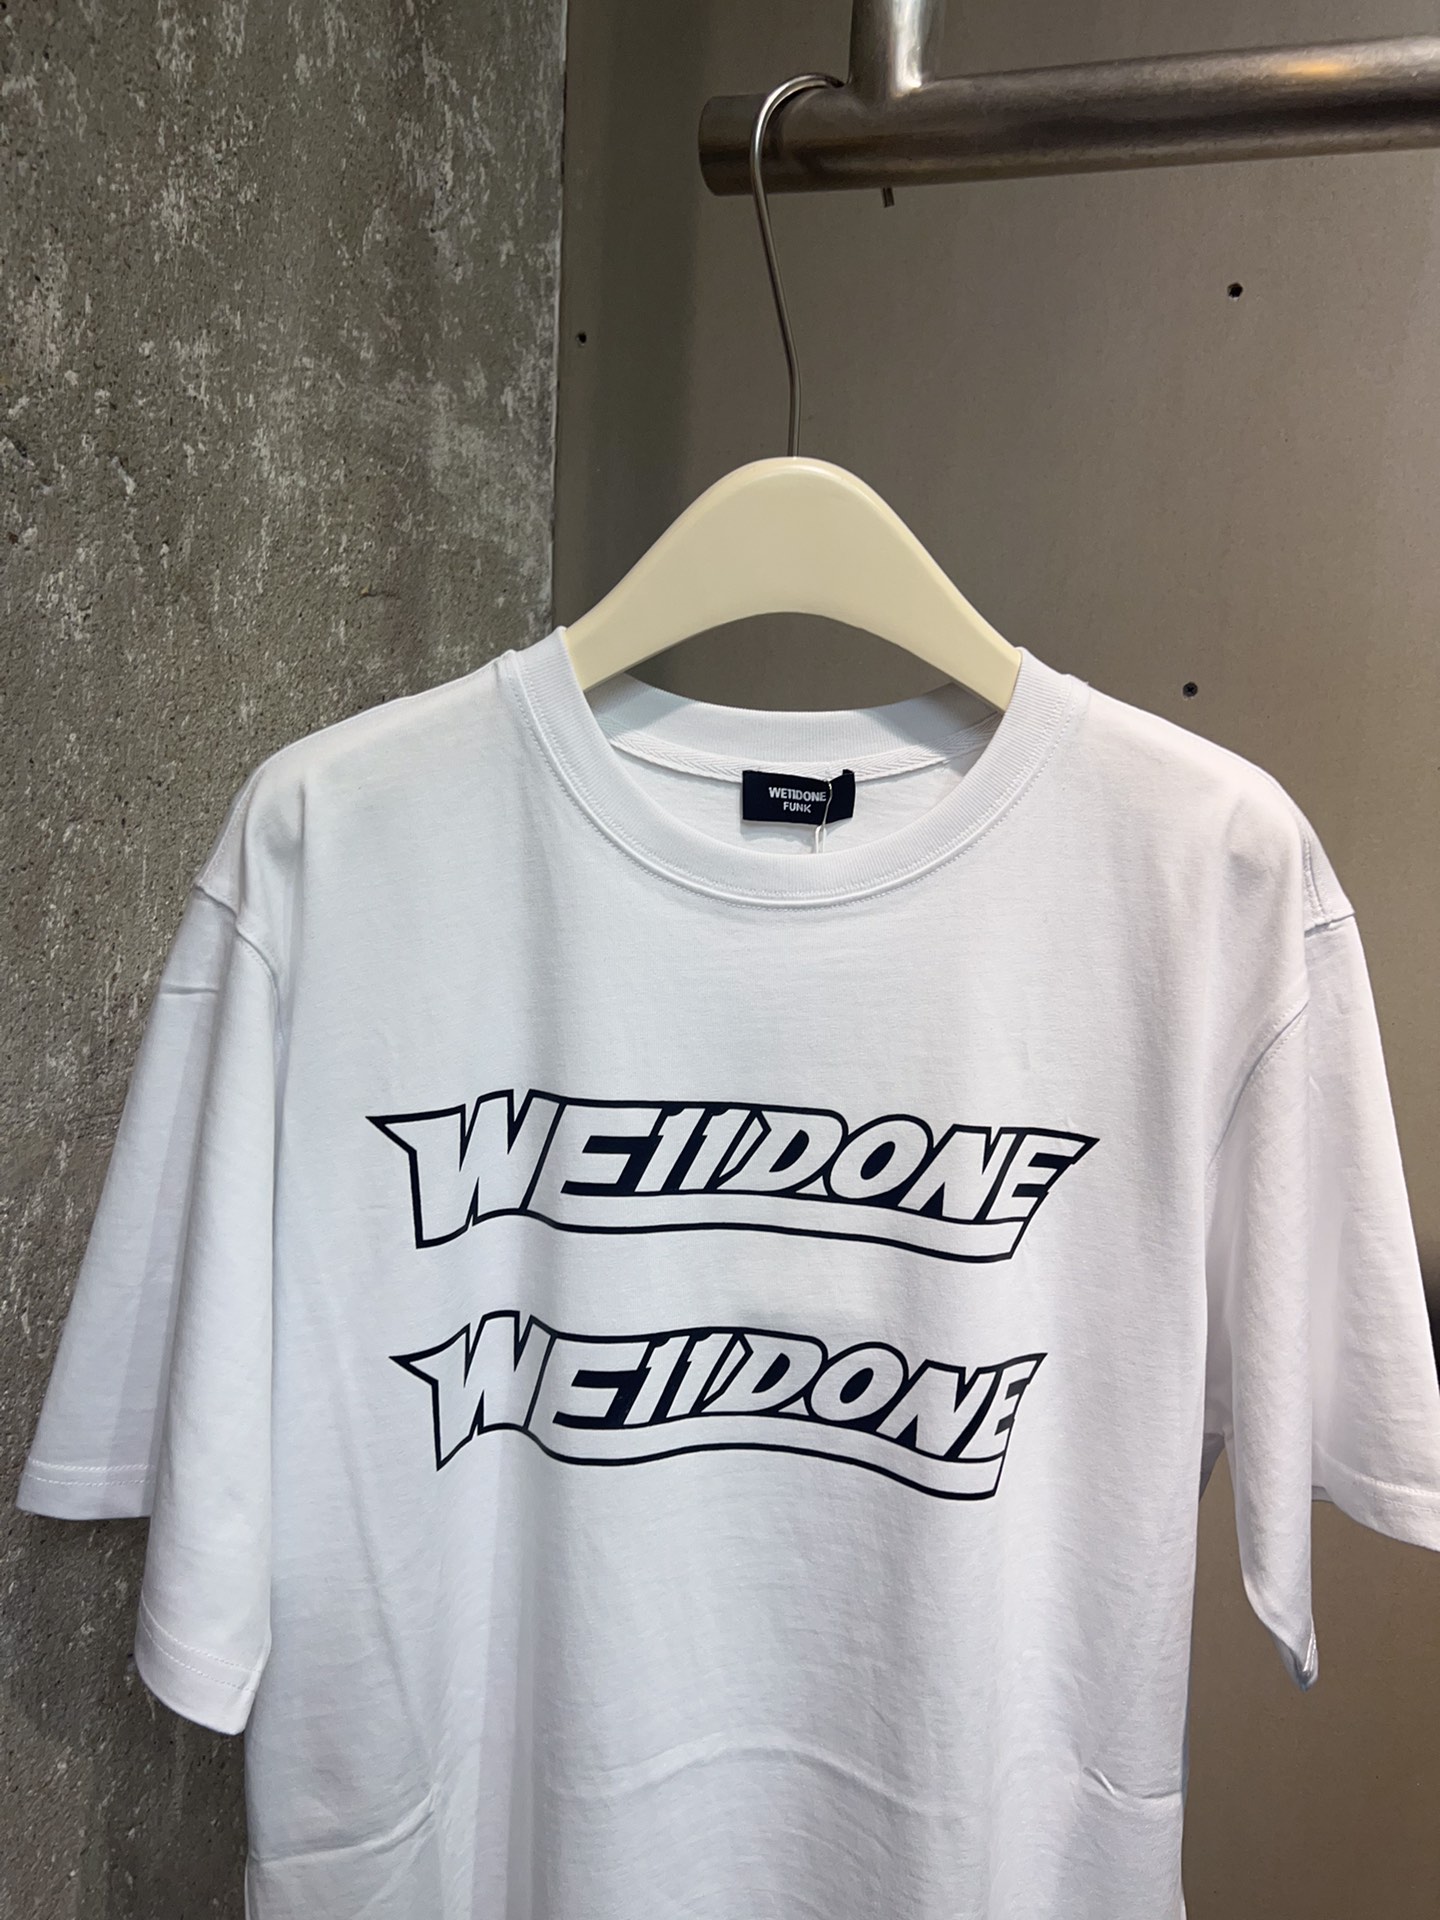 WE11DONE 超激得新品 トップウェルスーパーコピー 純綿Tシャツ 短袖 トップス カラフル 2色可選 人気新作 ホワイト_3